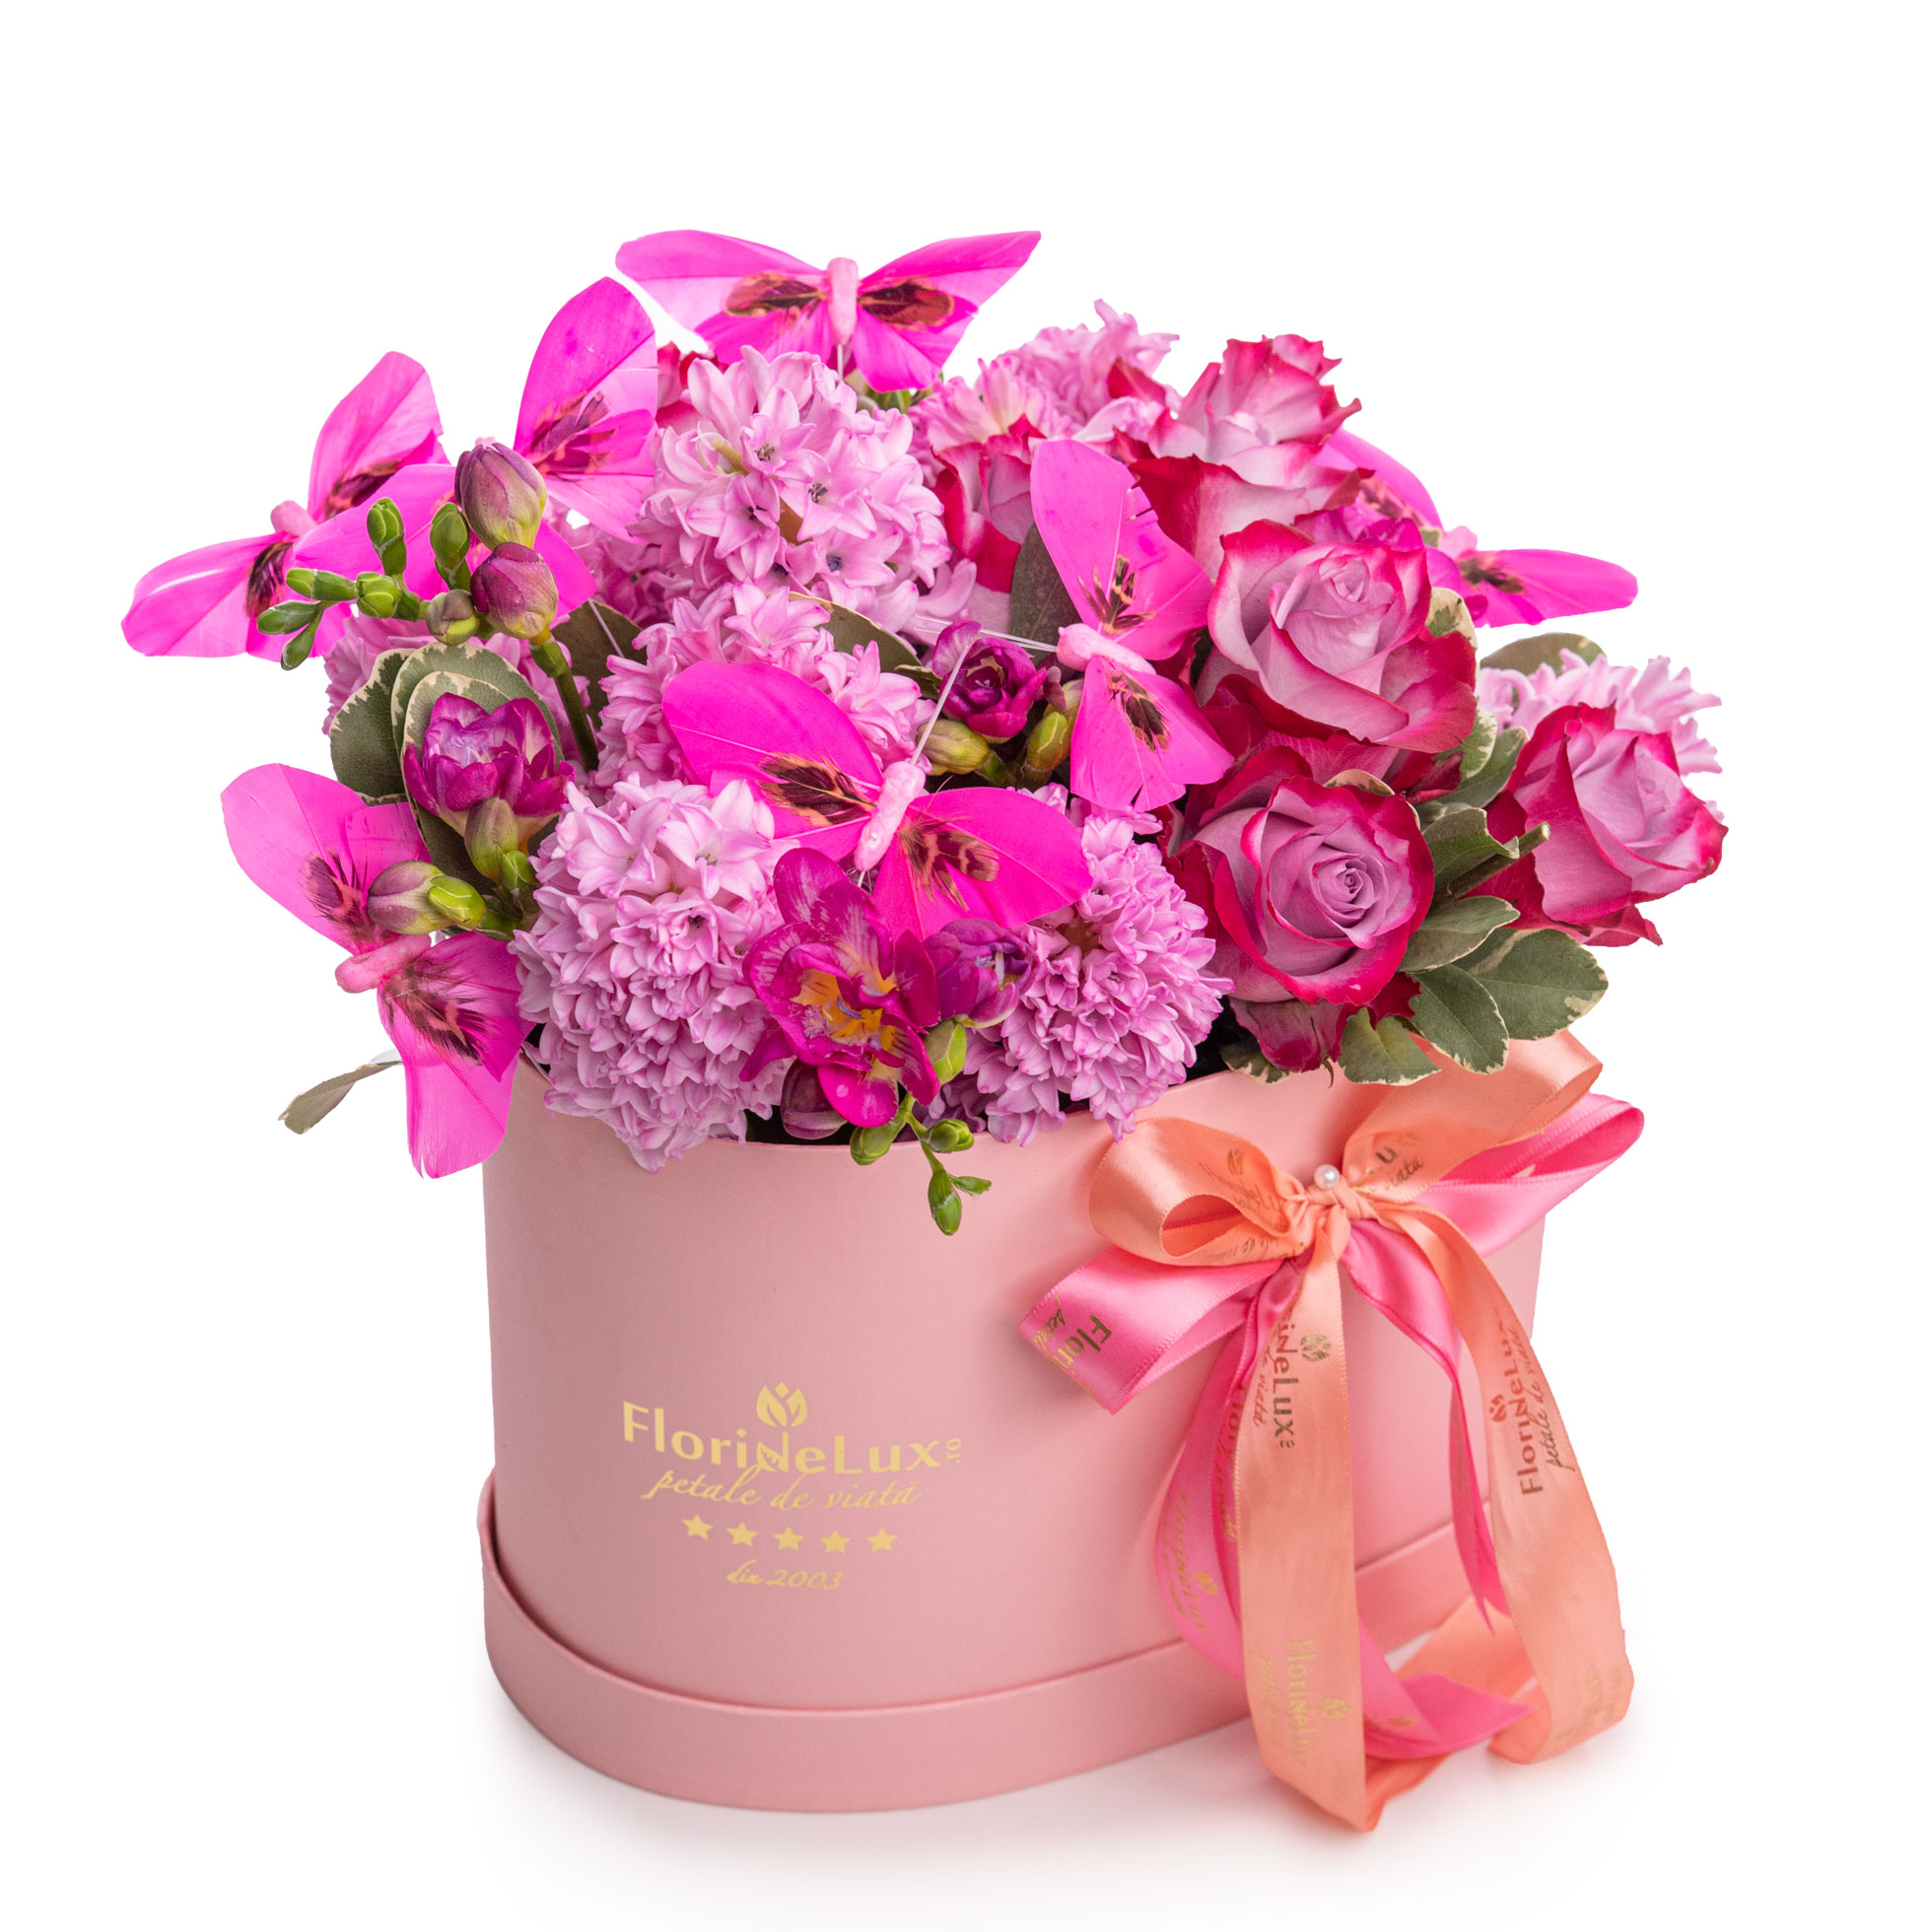 Aranjament floral cu flori roz si accesorii Accesorii